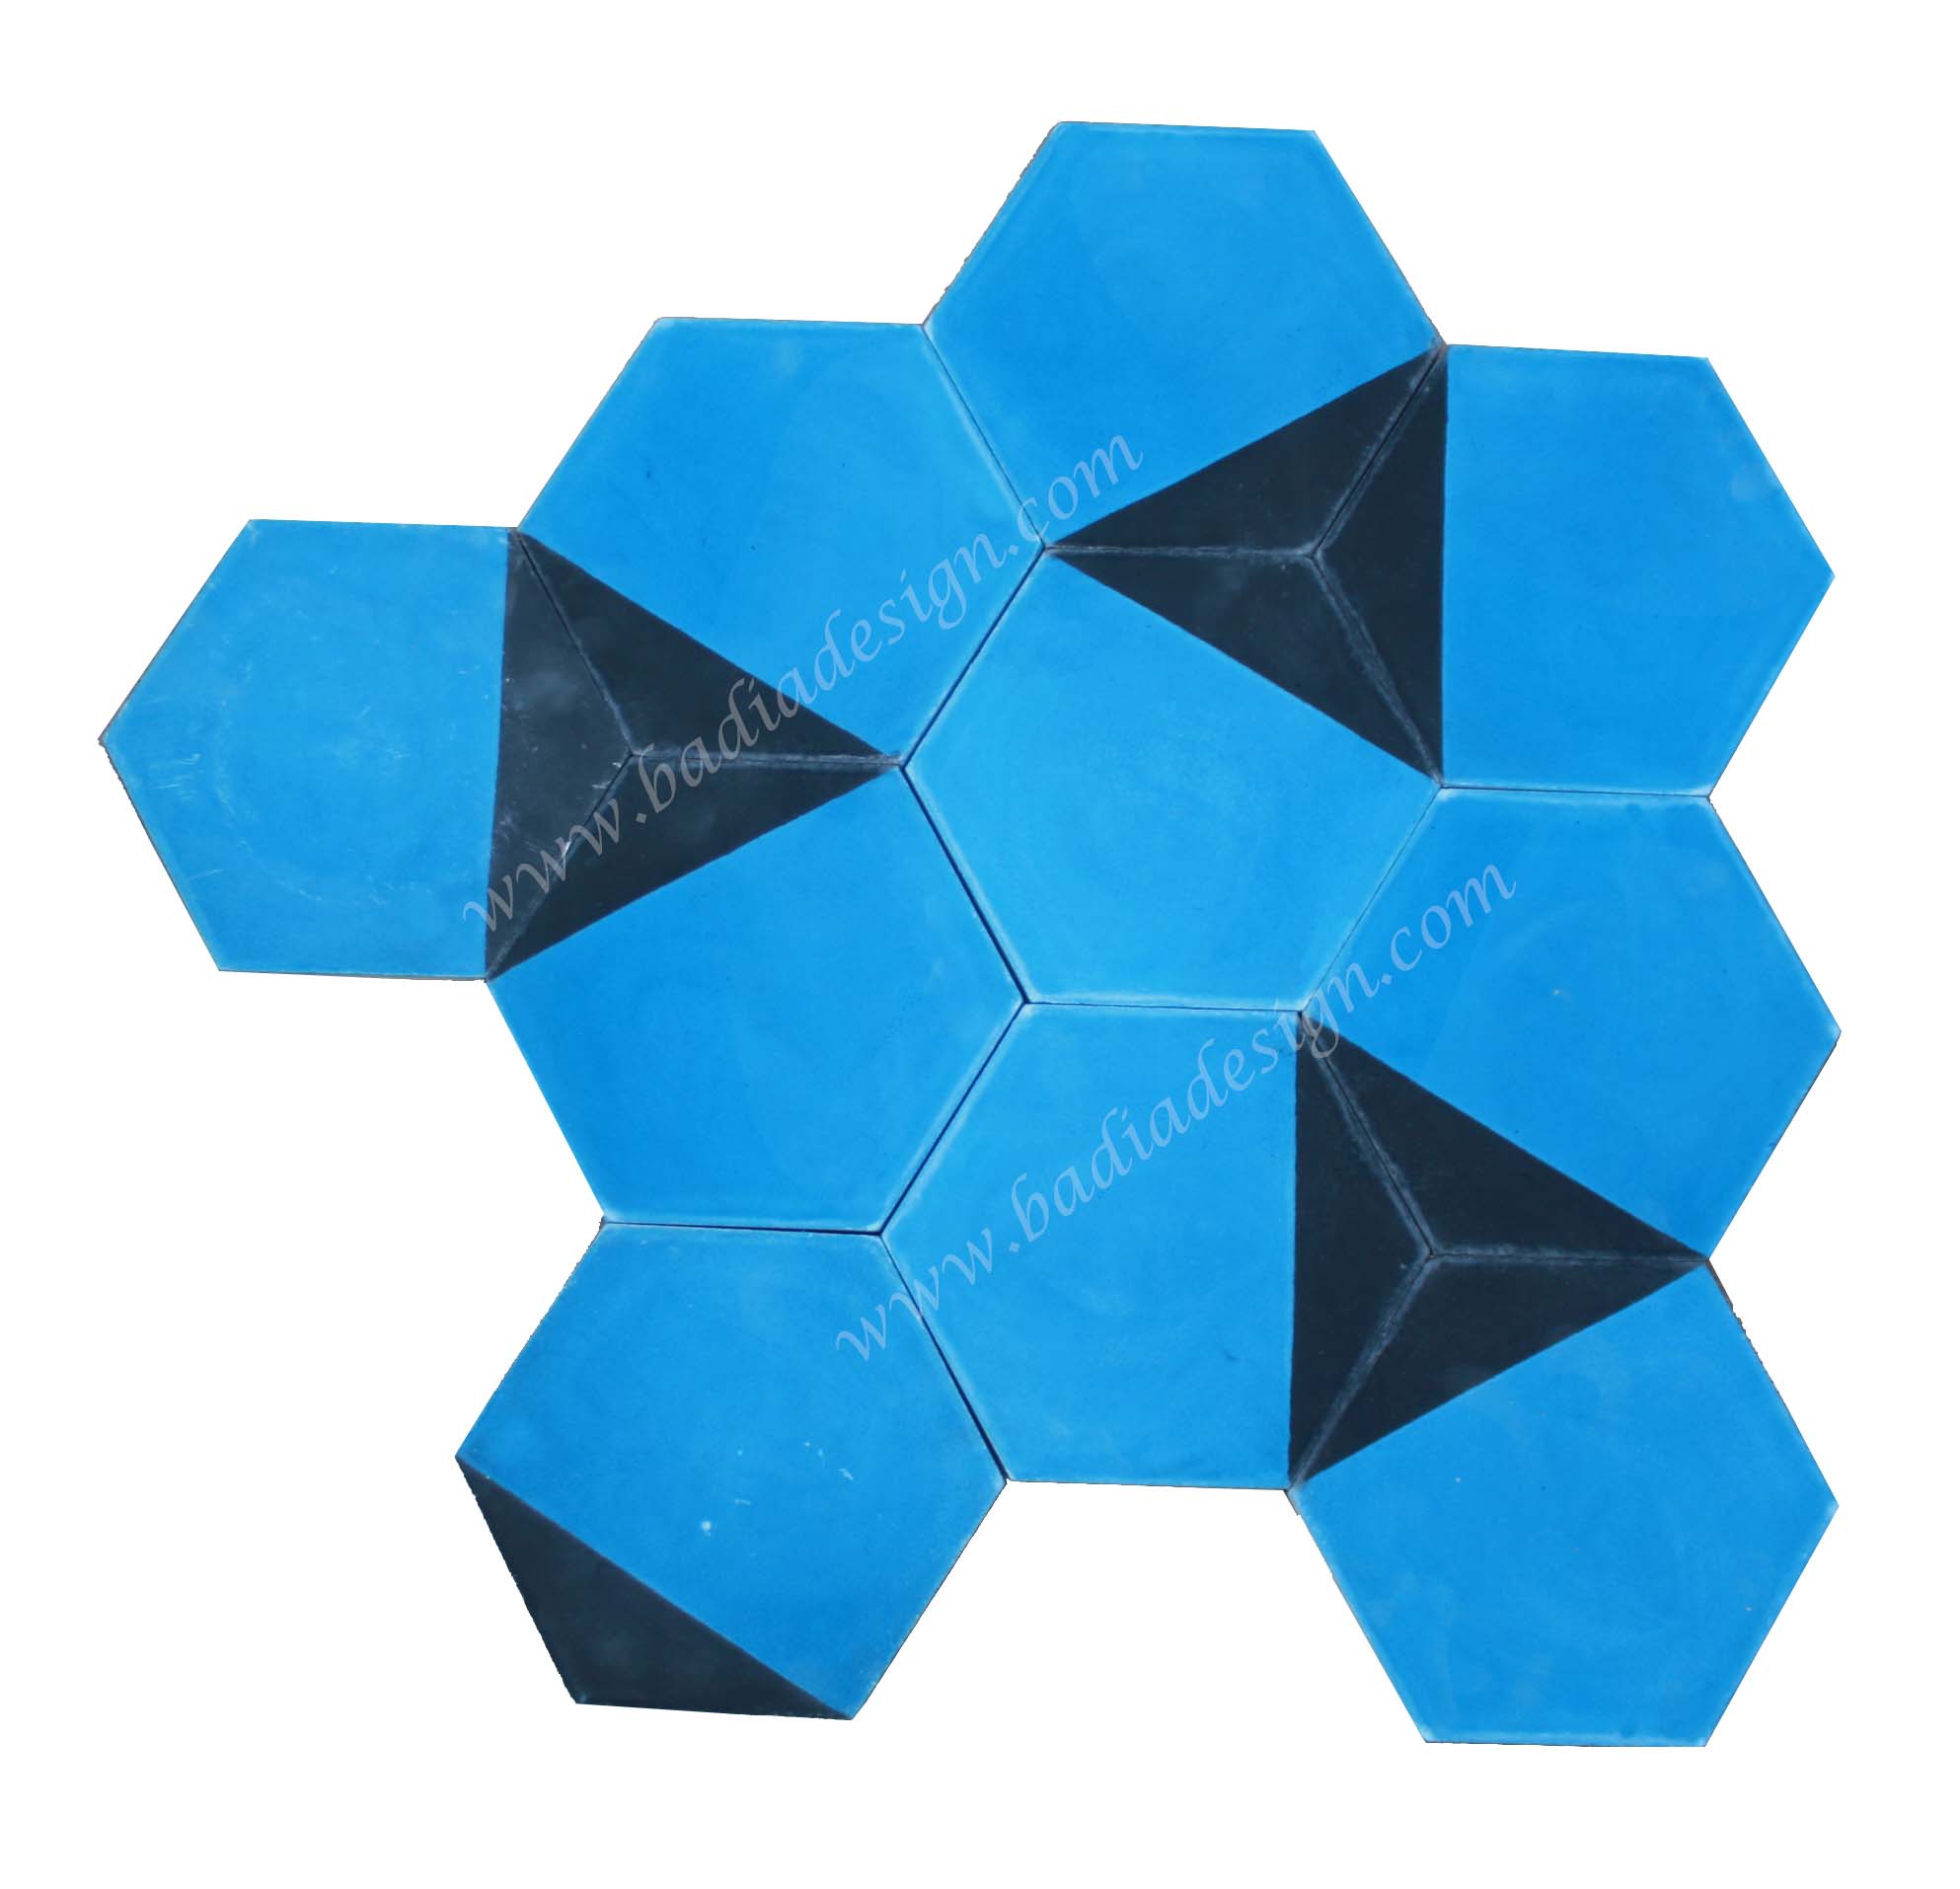 hexagon-shaped-terracotta-tile-ct101-1.jpg